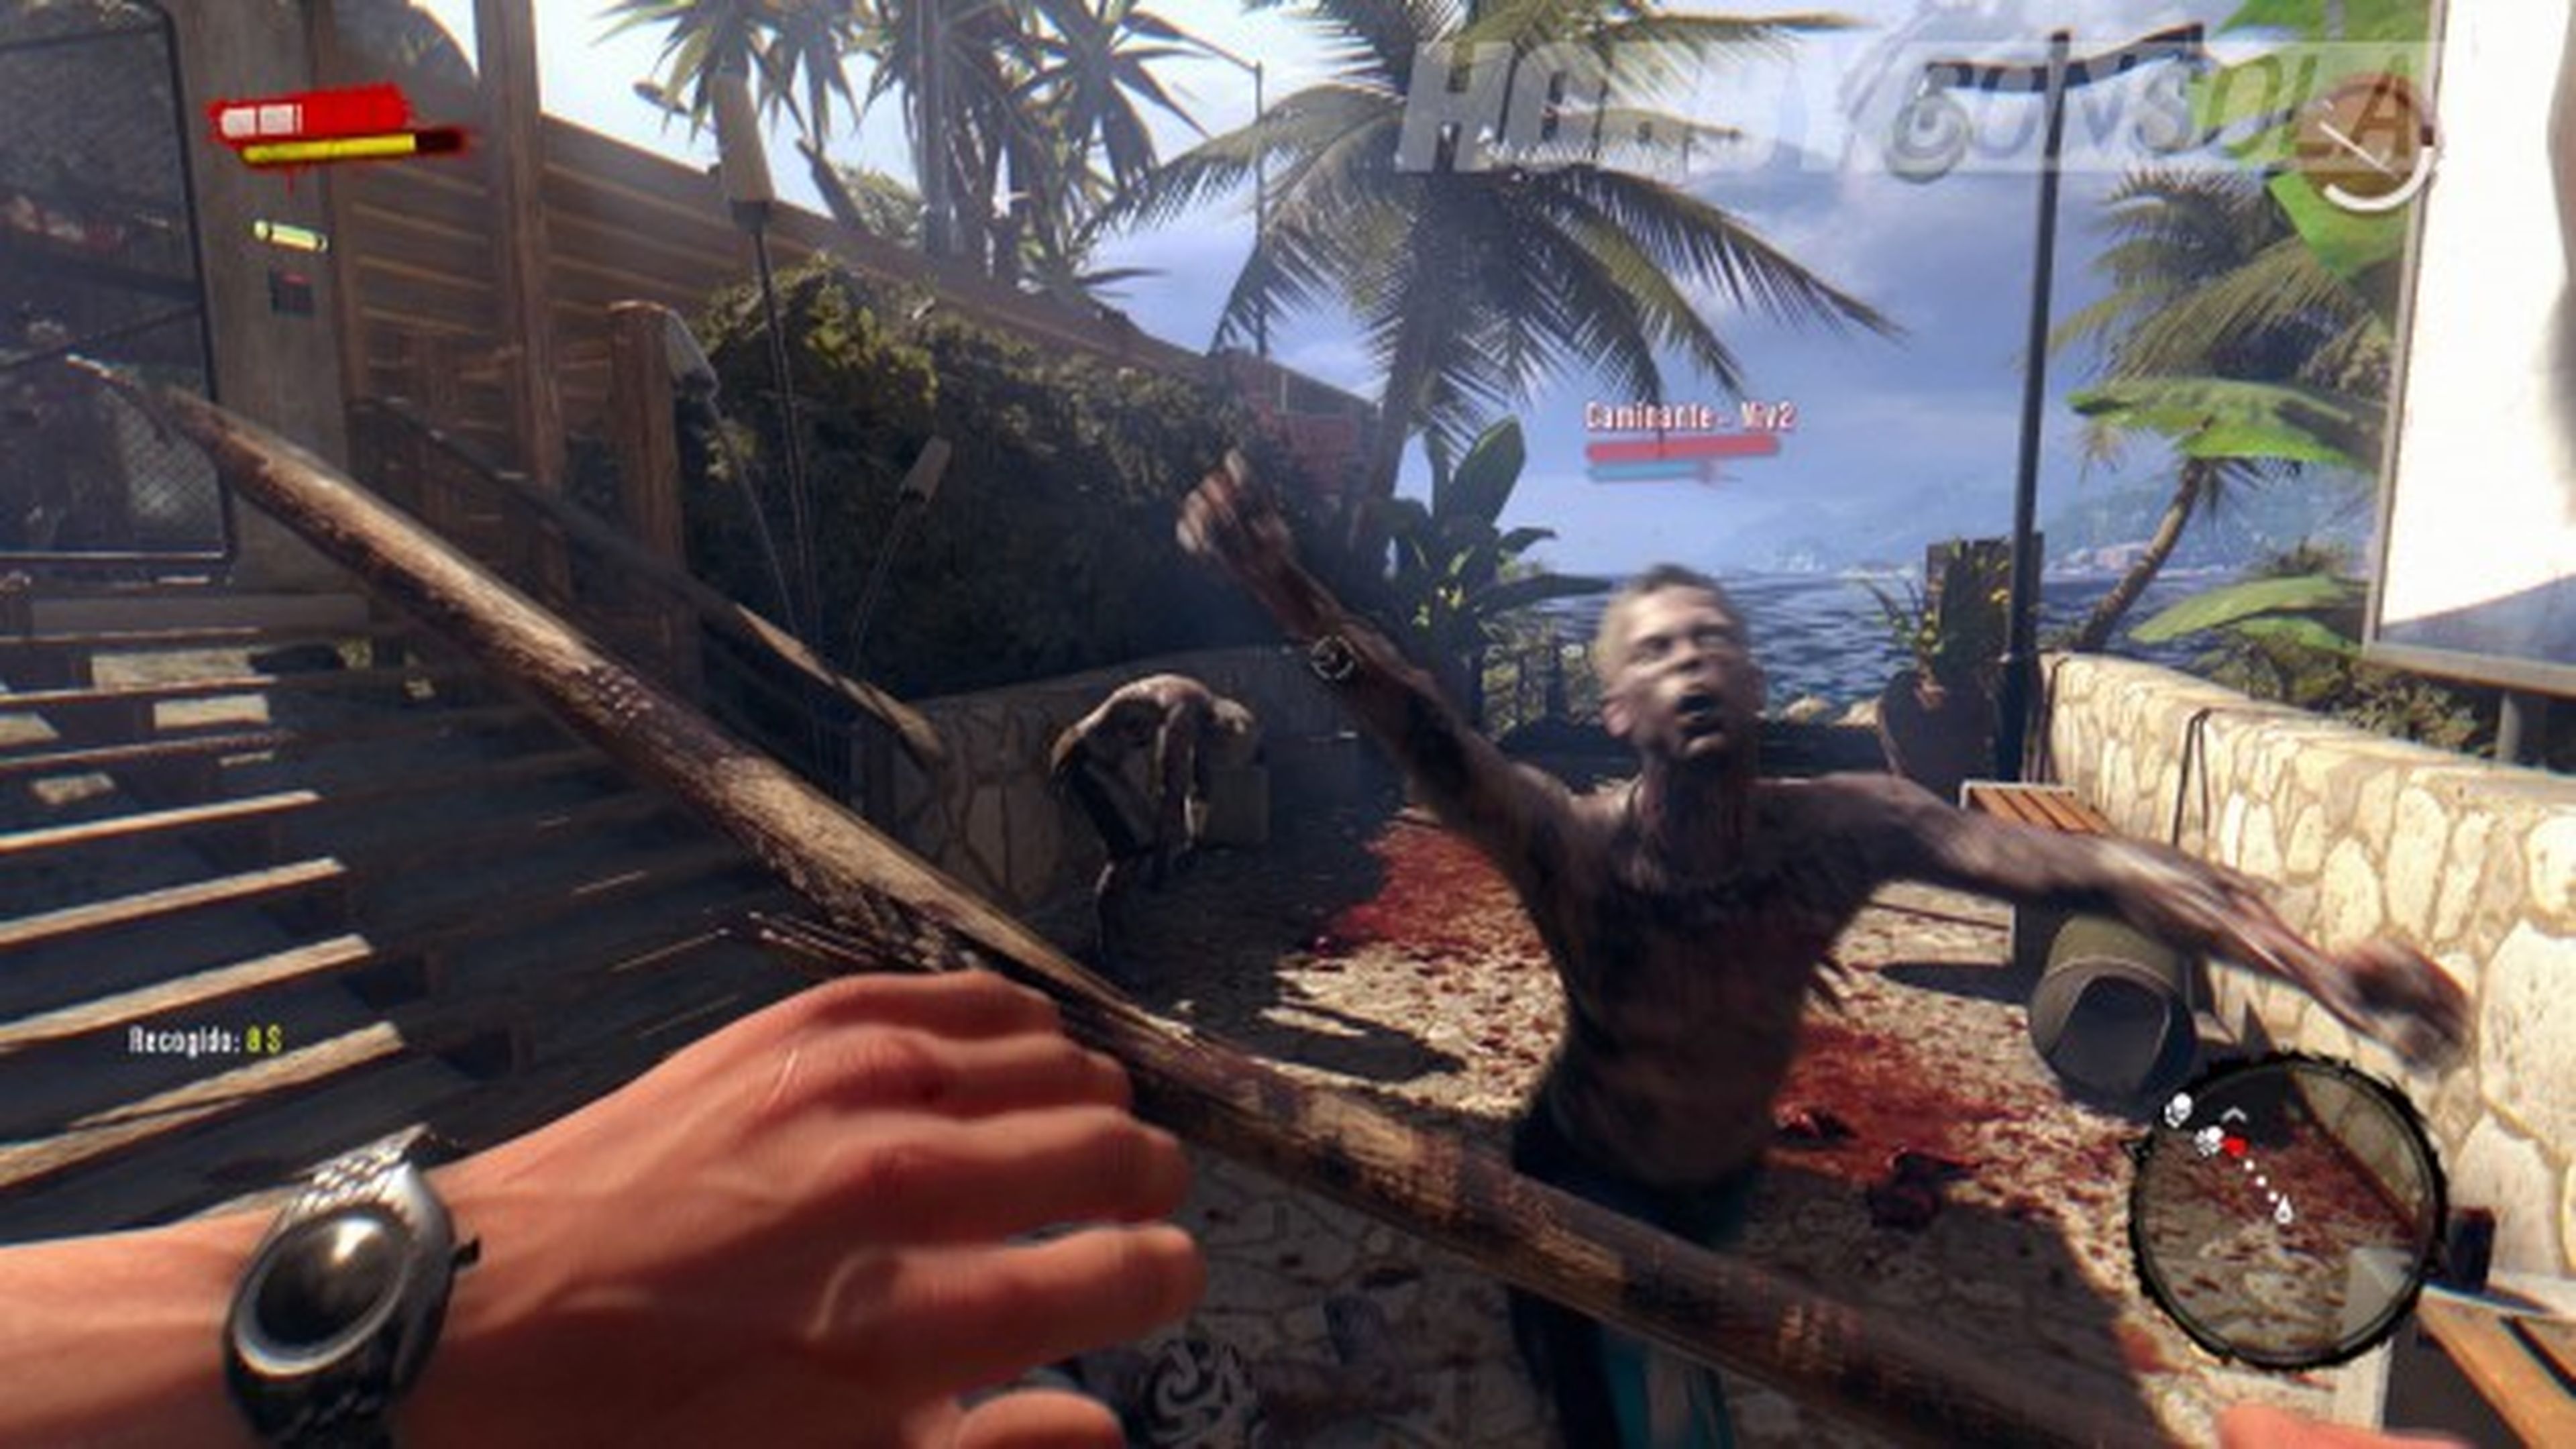 Dead island Riptide, análisis y opiniones del juego para PC